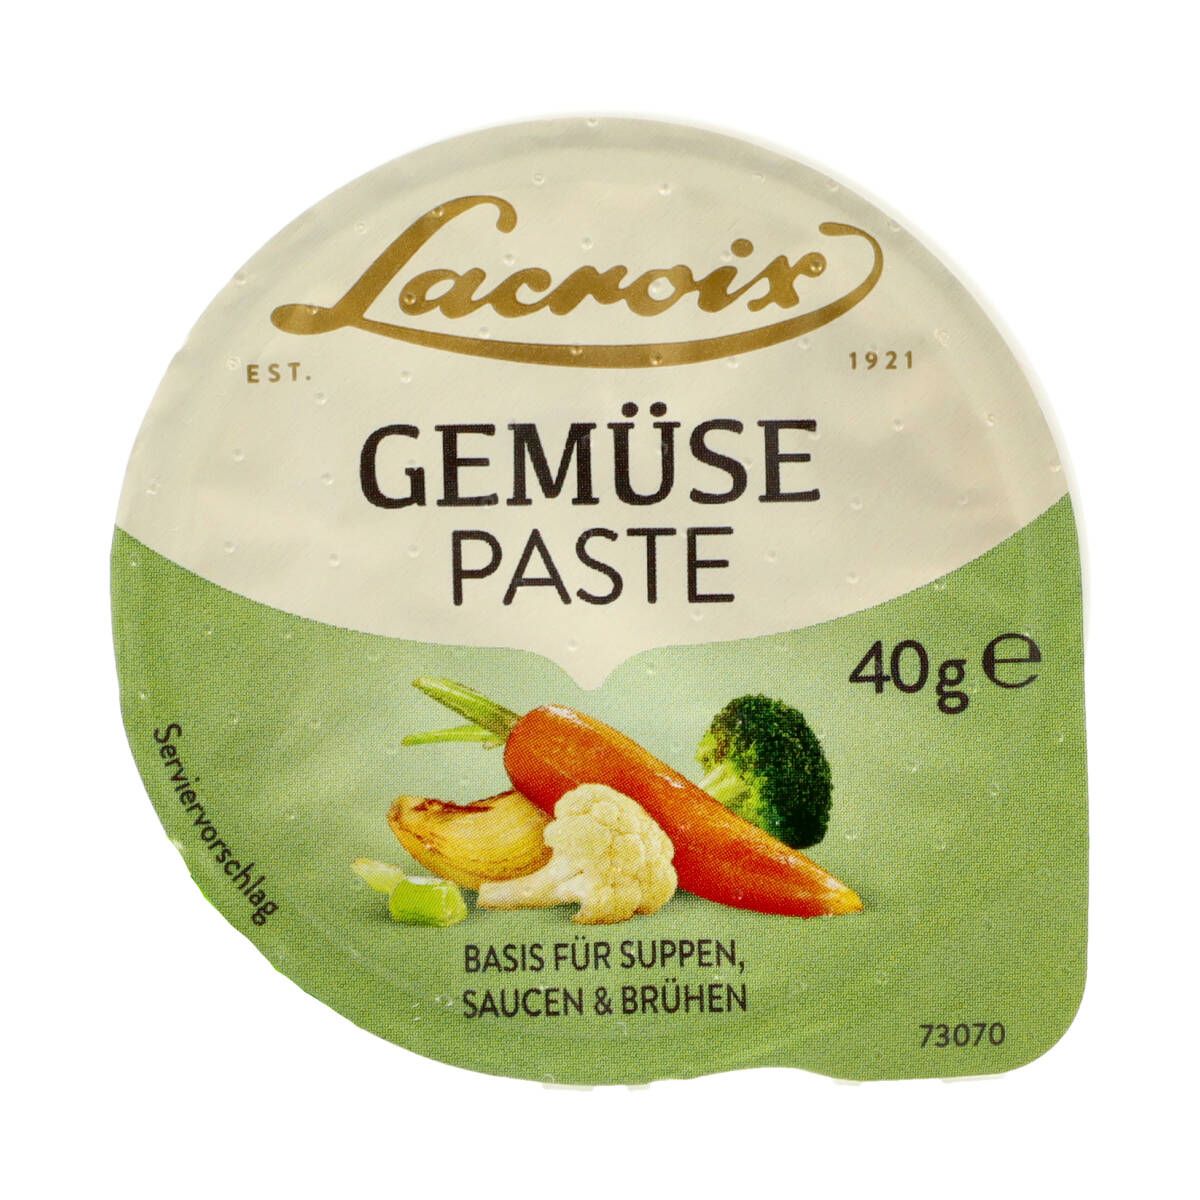 Lacroix Gemüse Paste 40g